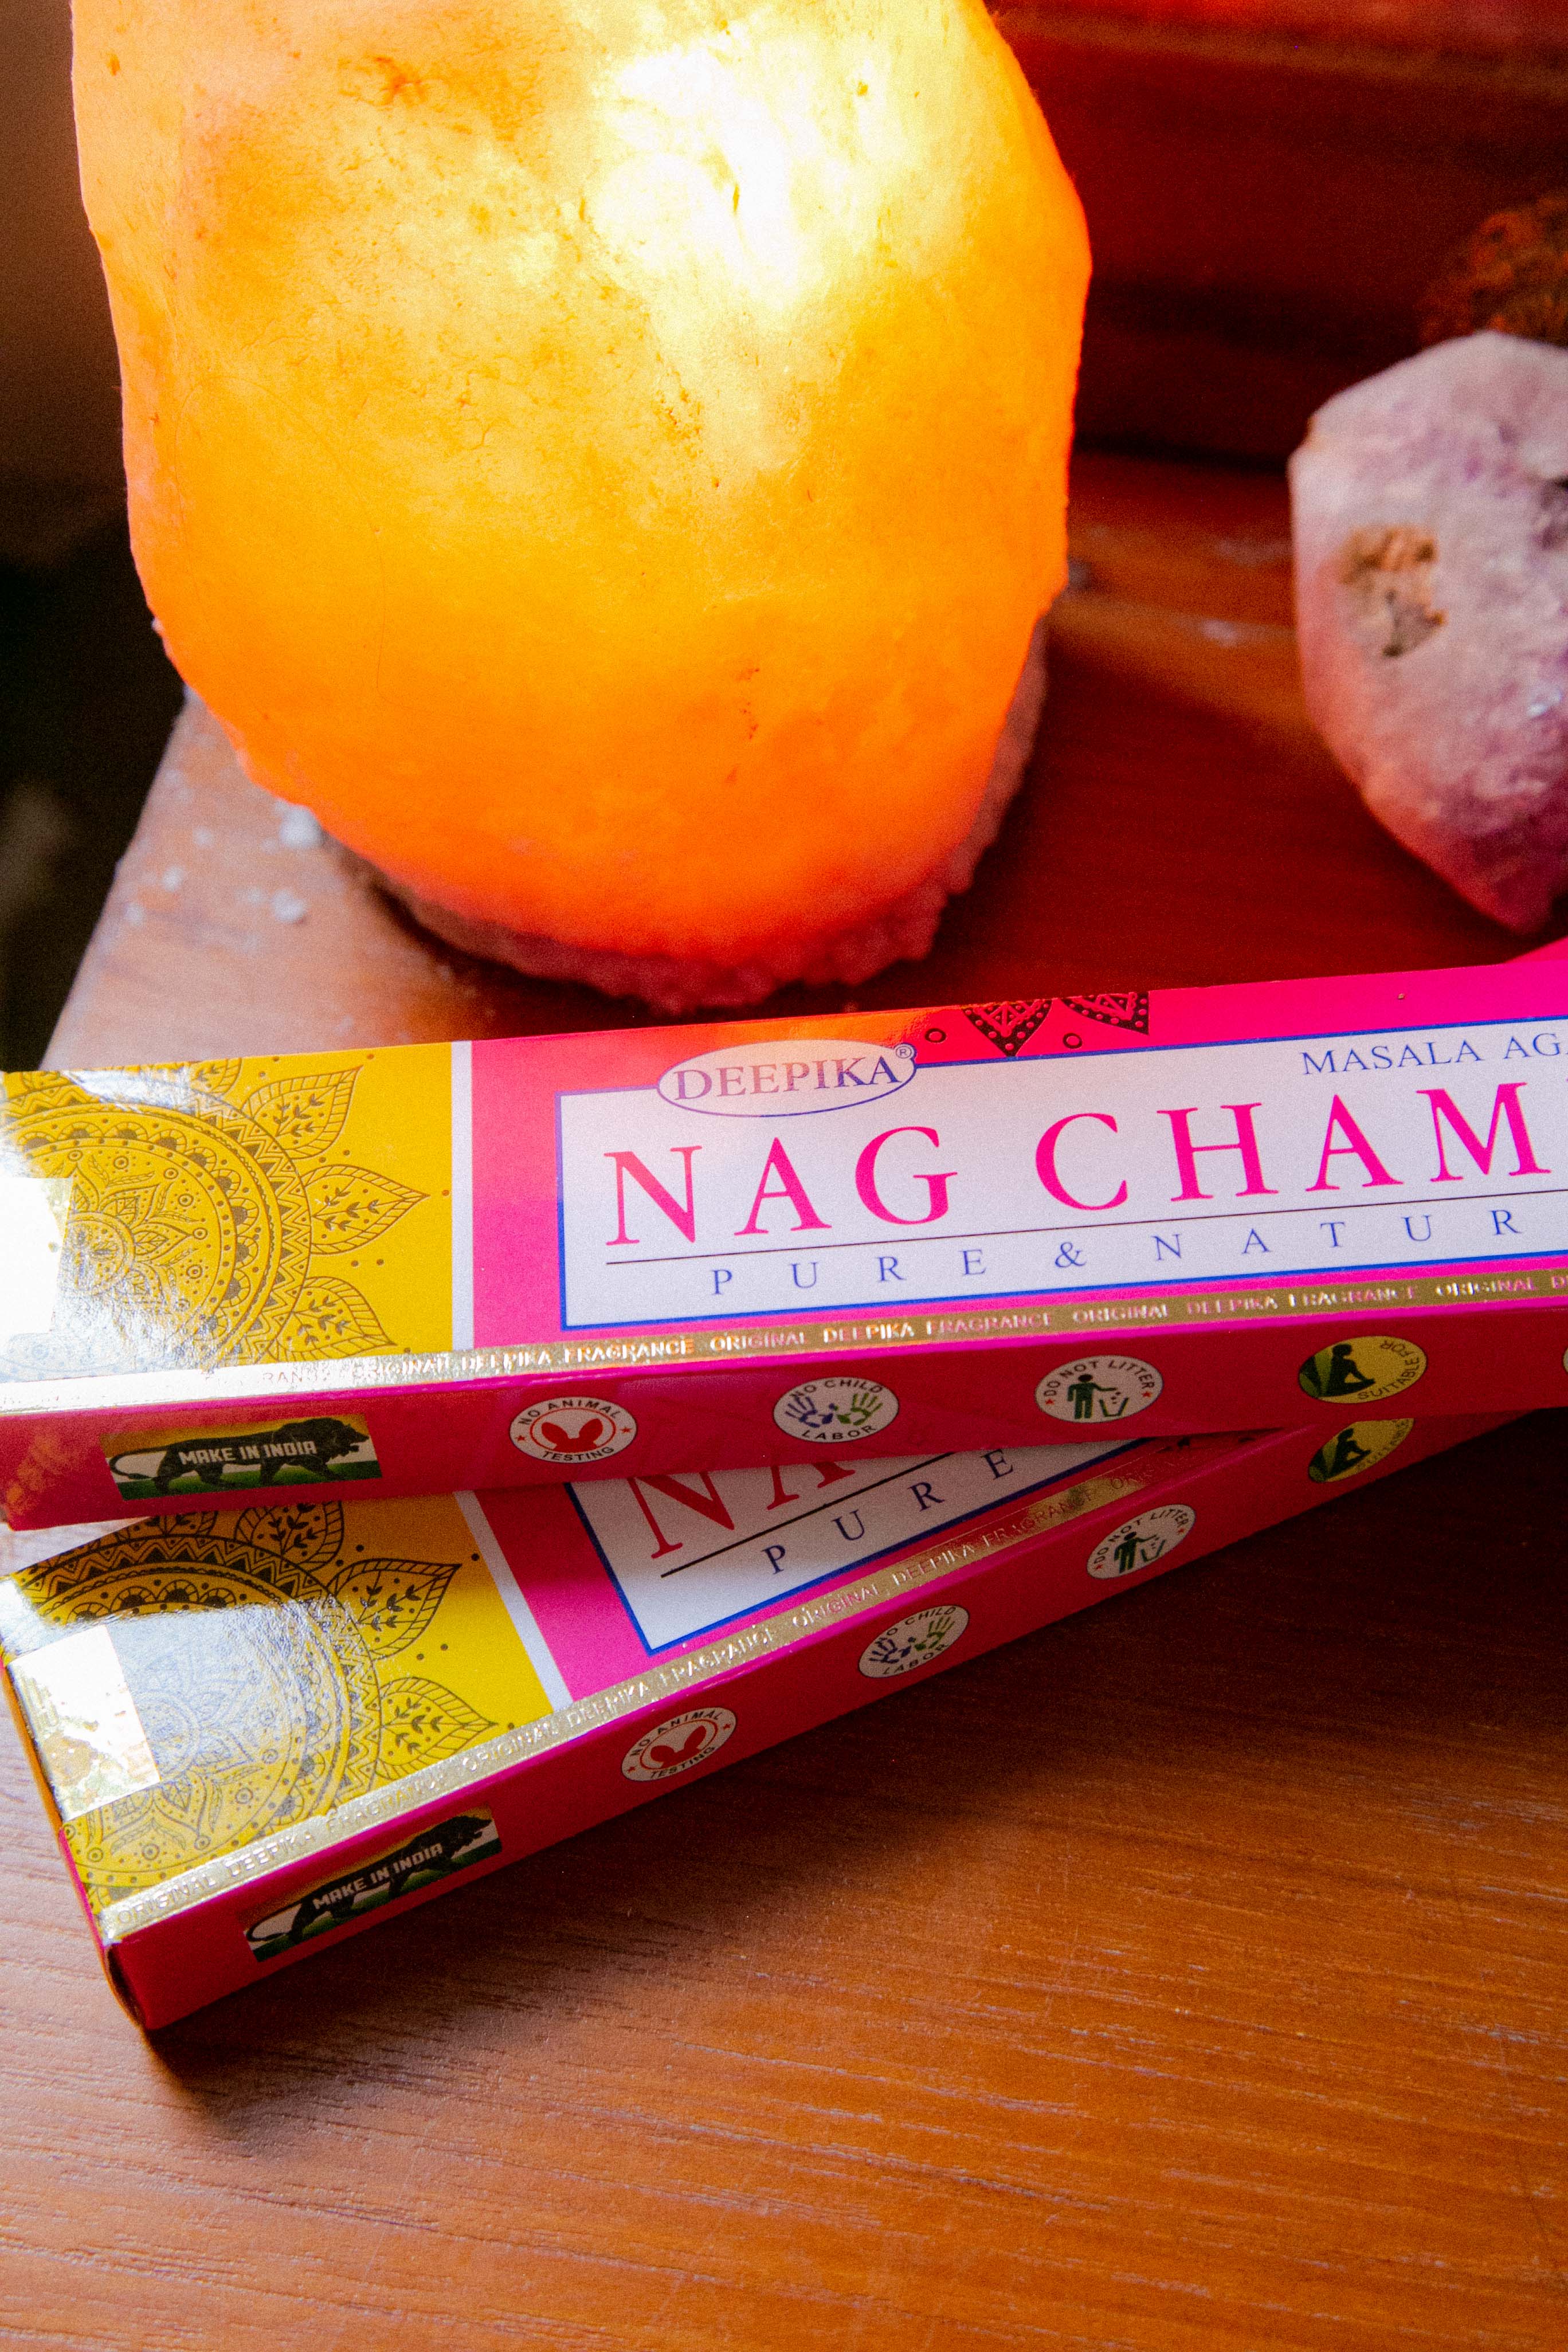 Deepika Nagchampa Incense